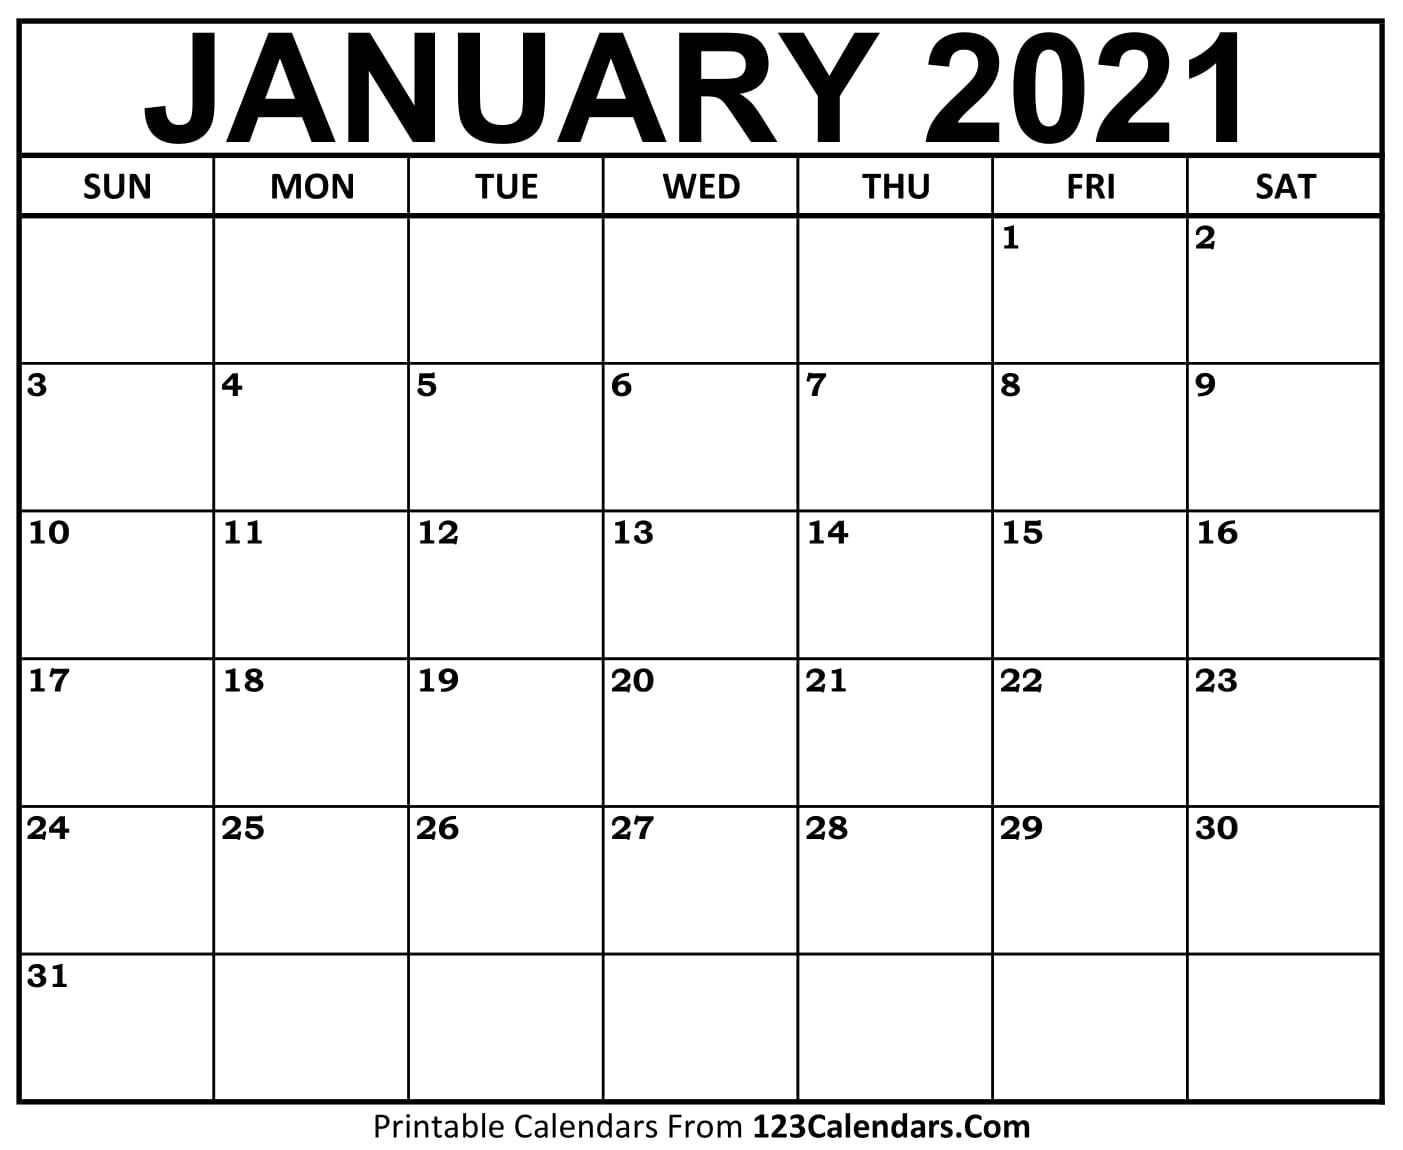 Free January 2021 Calendar | 123calendars